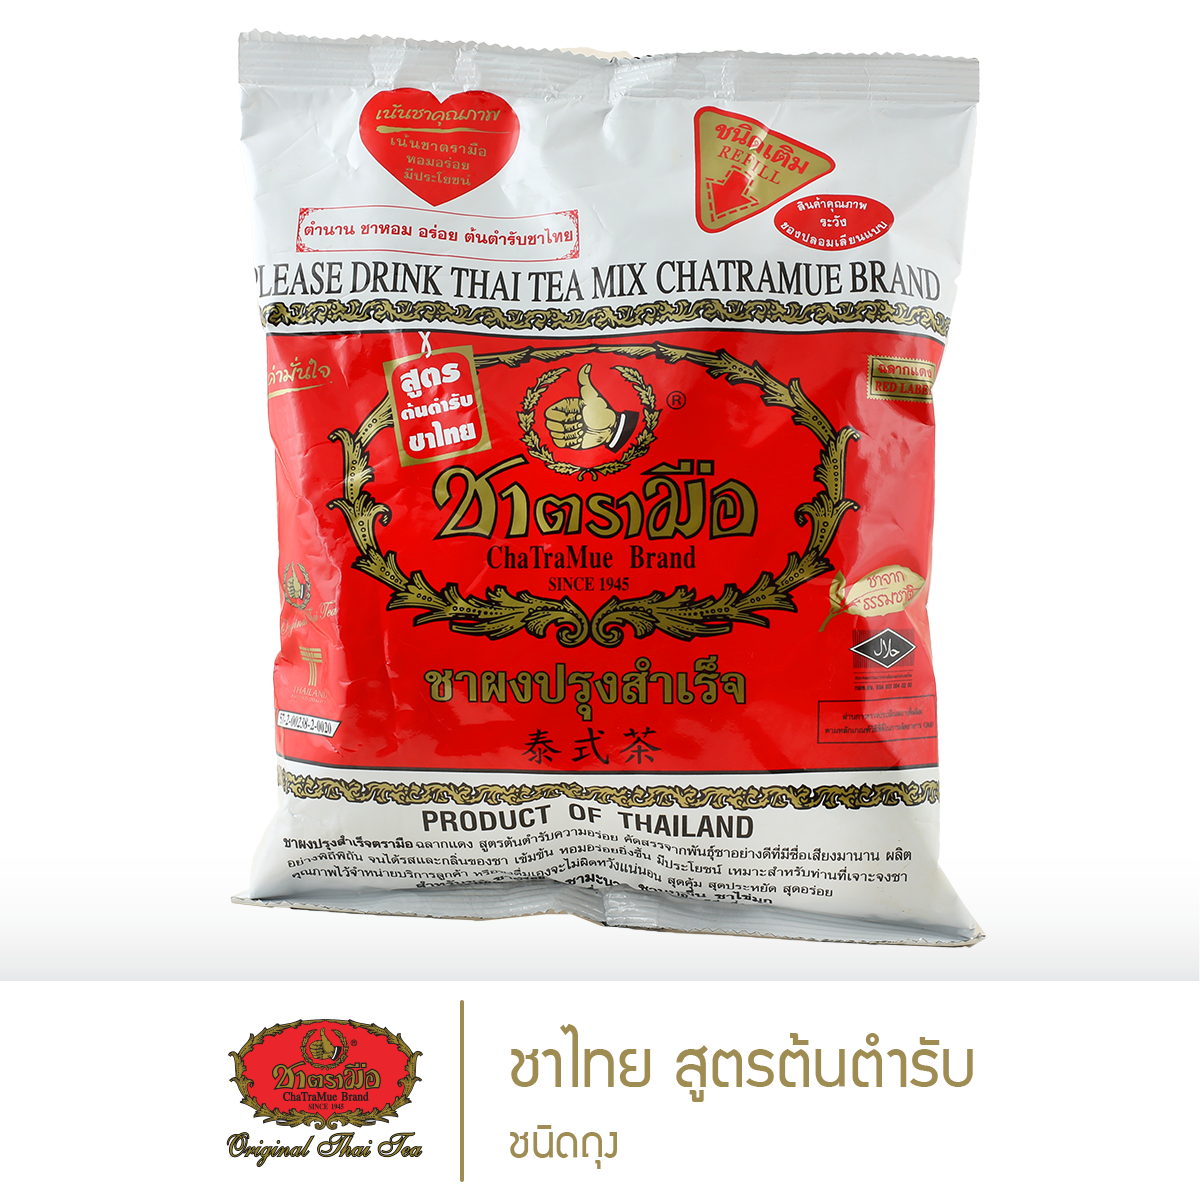 ชาตรามือ ชาไทยสูตรต้นตำรับ ชนิดถุง 400 กรัม (THAI TEA MIX ORIGINAL - BAG PACK 400 G.)